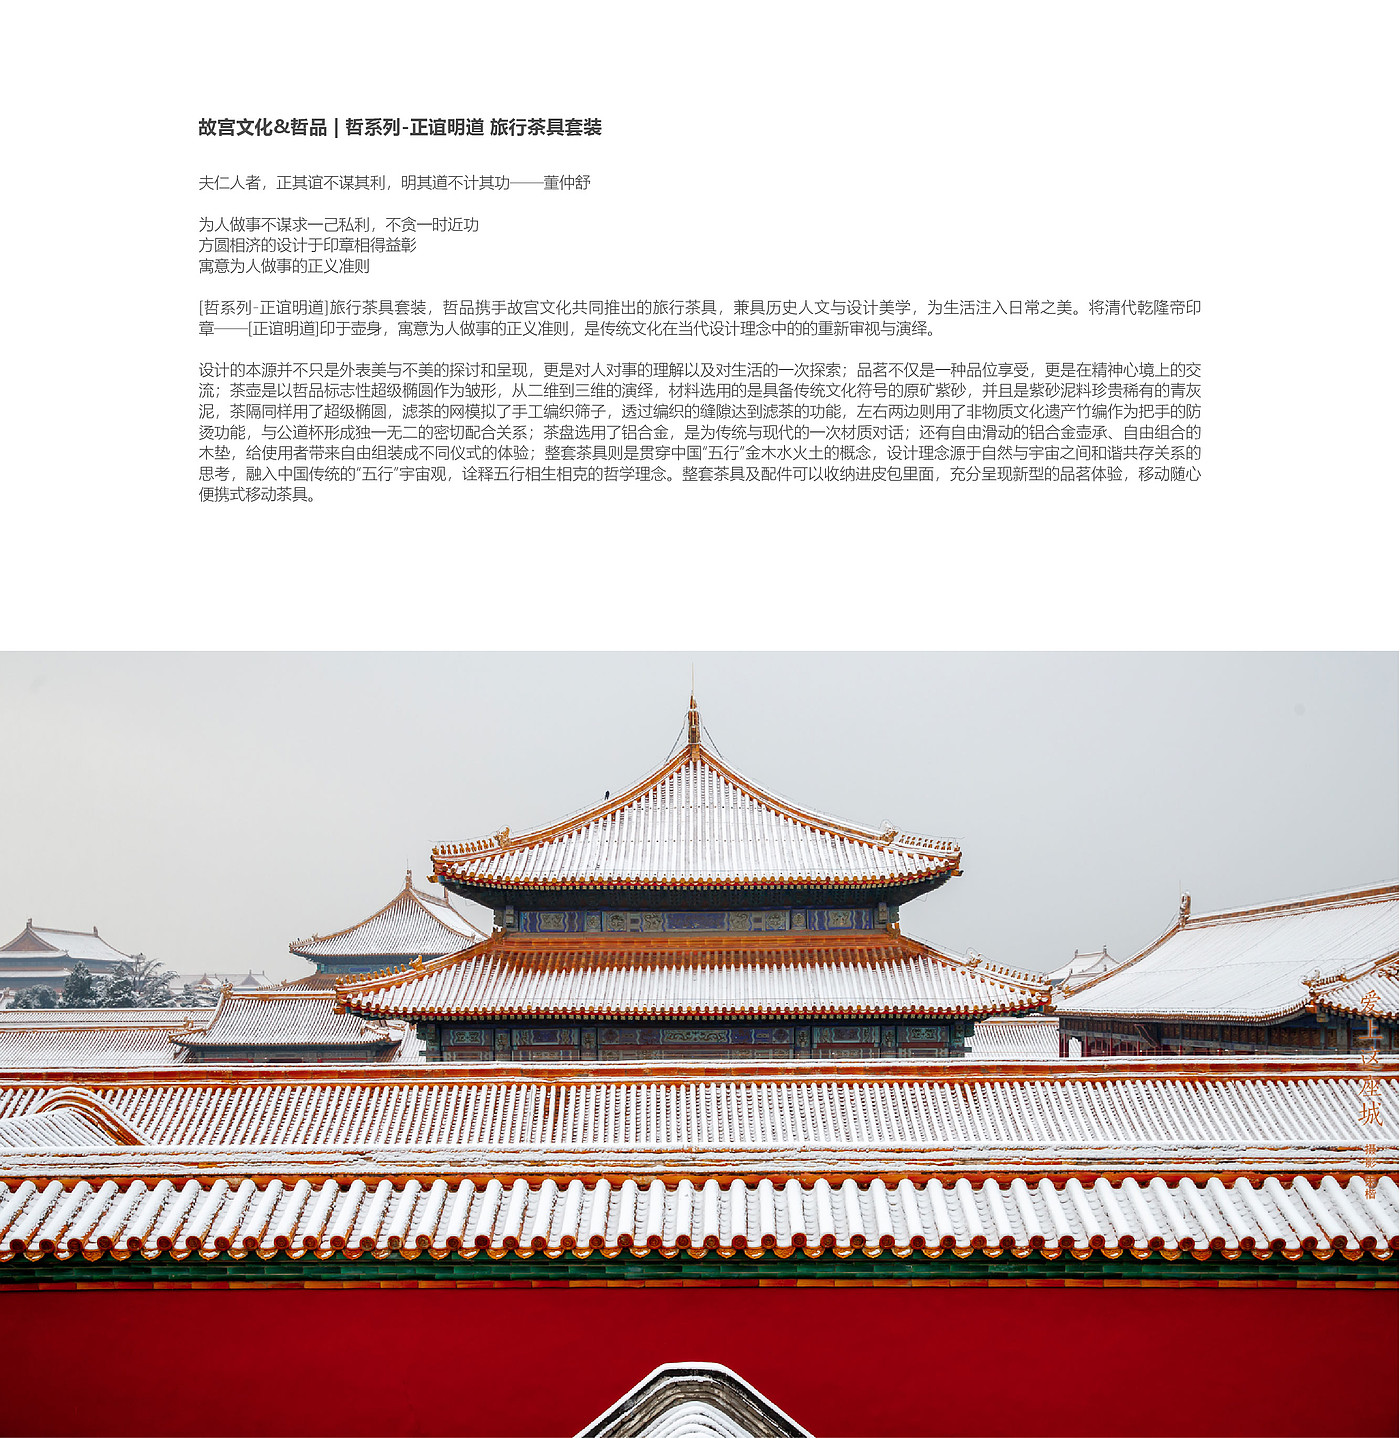 原创文化设计产品，北京故宫文化，旅行茶具套装，便携式移动茶具，美学家居生活体验，